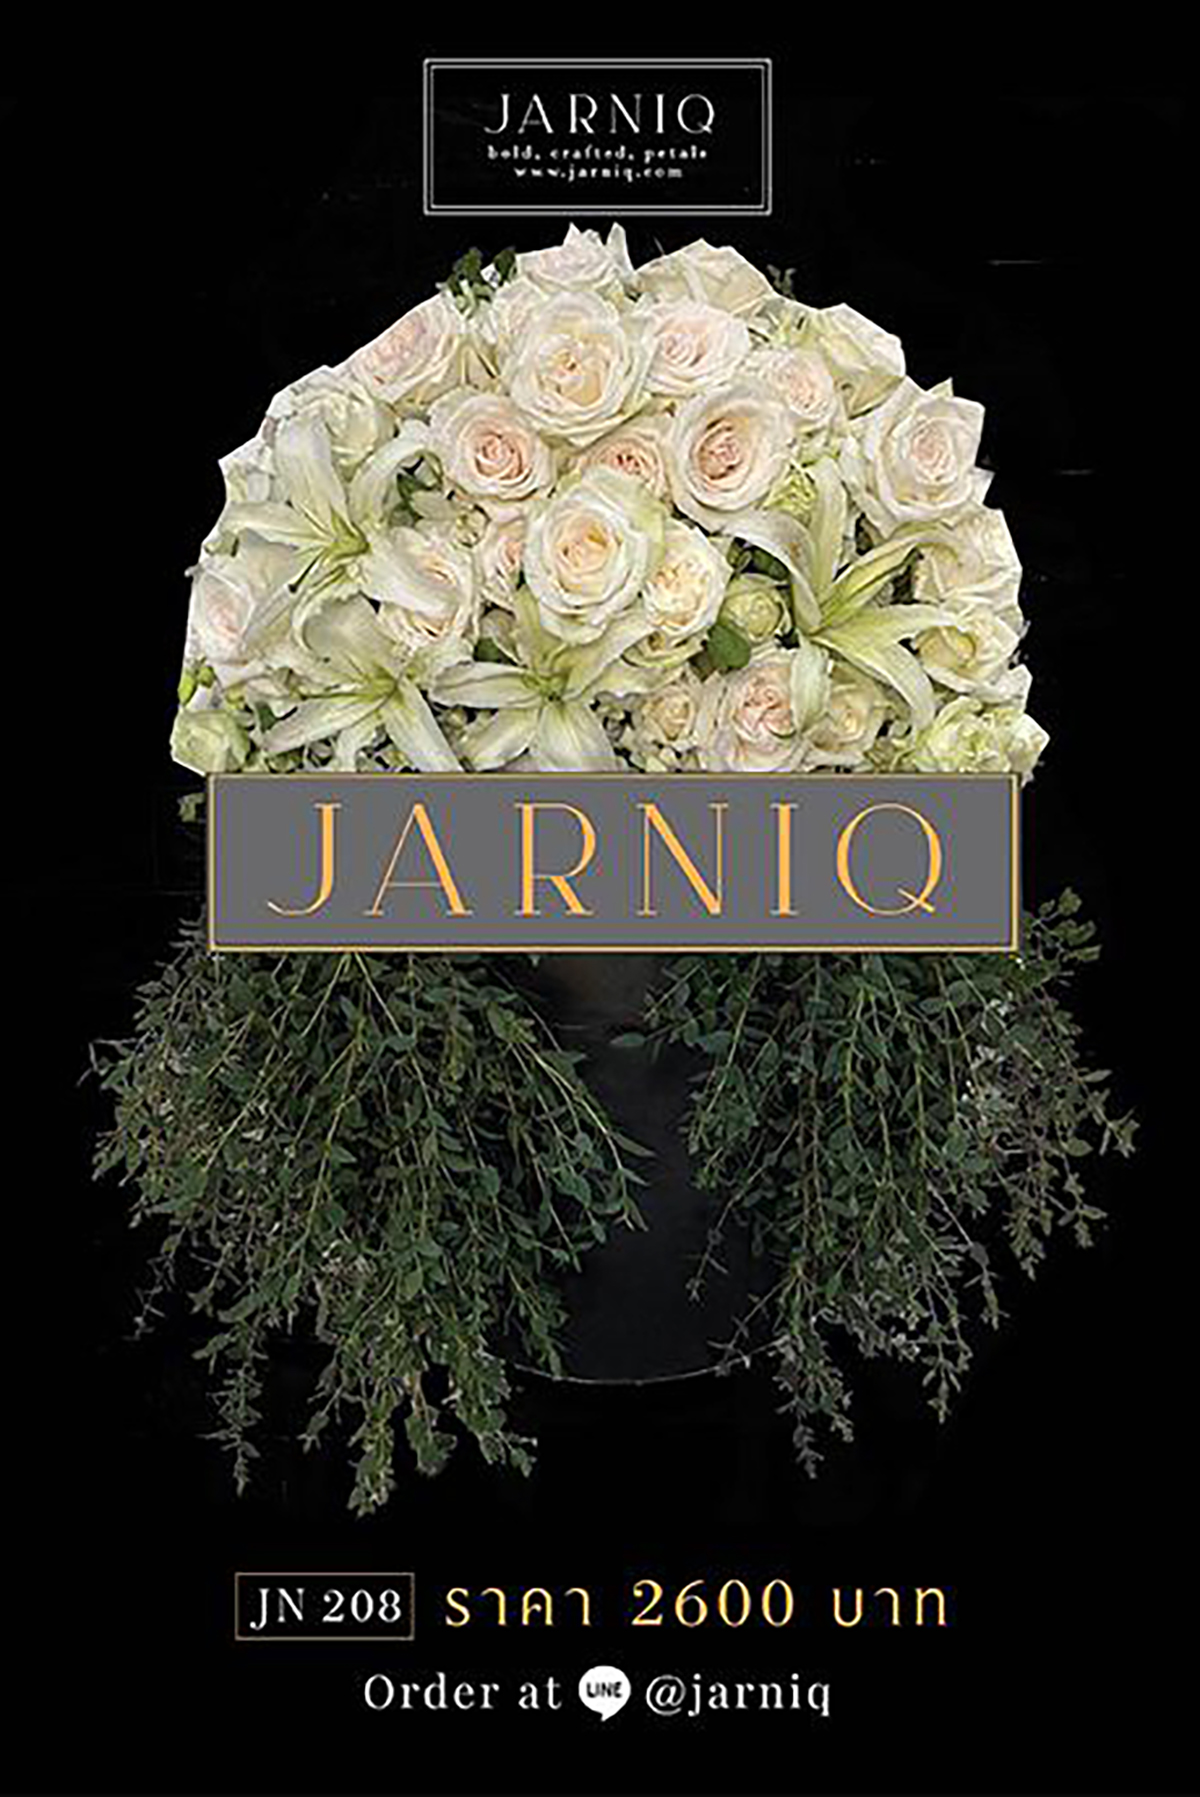 พวงหรีด พวงหรีดดอกไม้สด JN208 ส่งฟรีทั่วกรุงเทพมหานคร